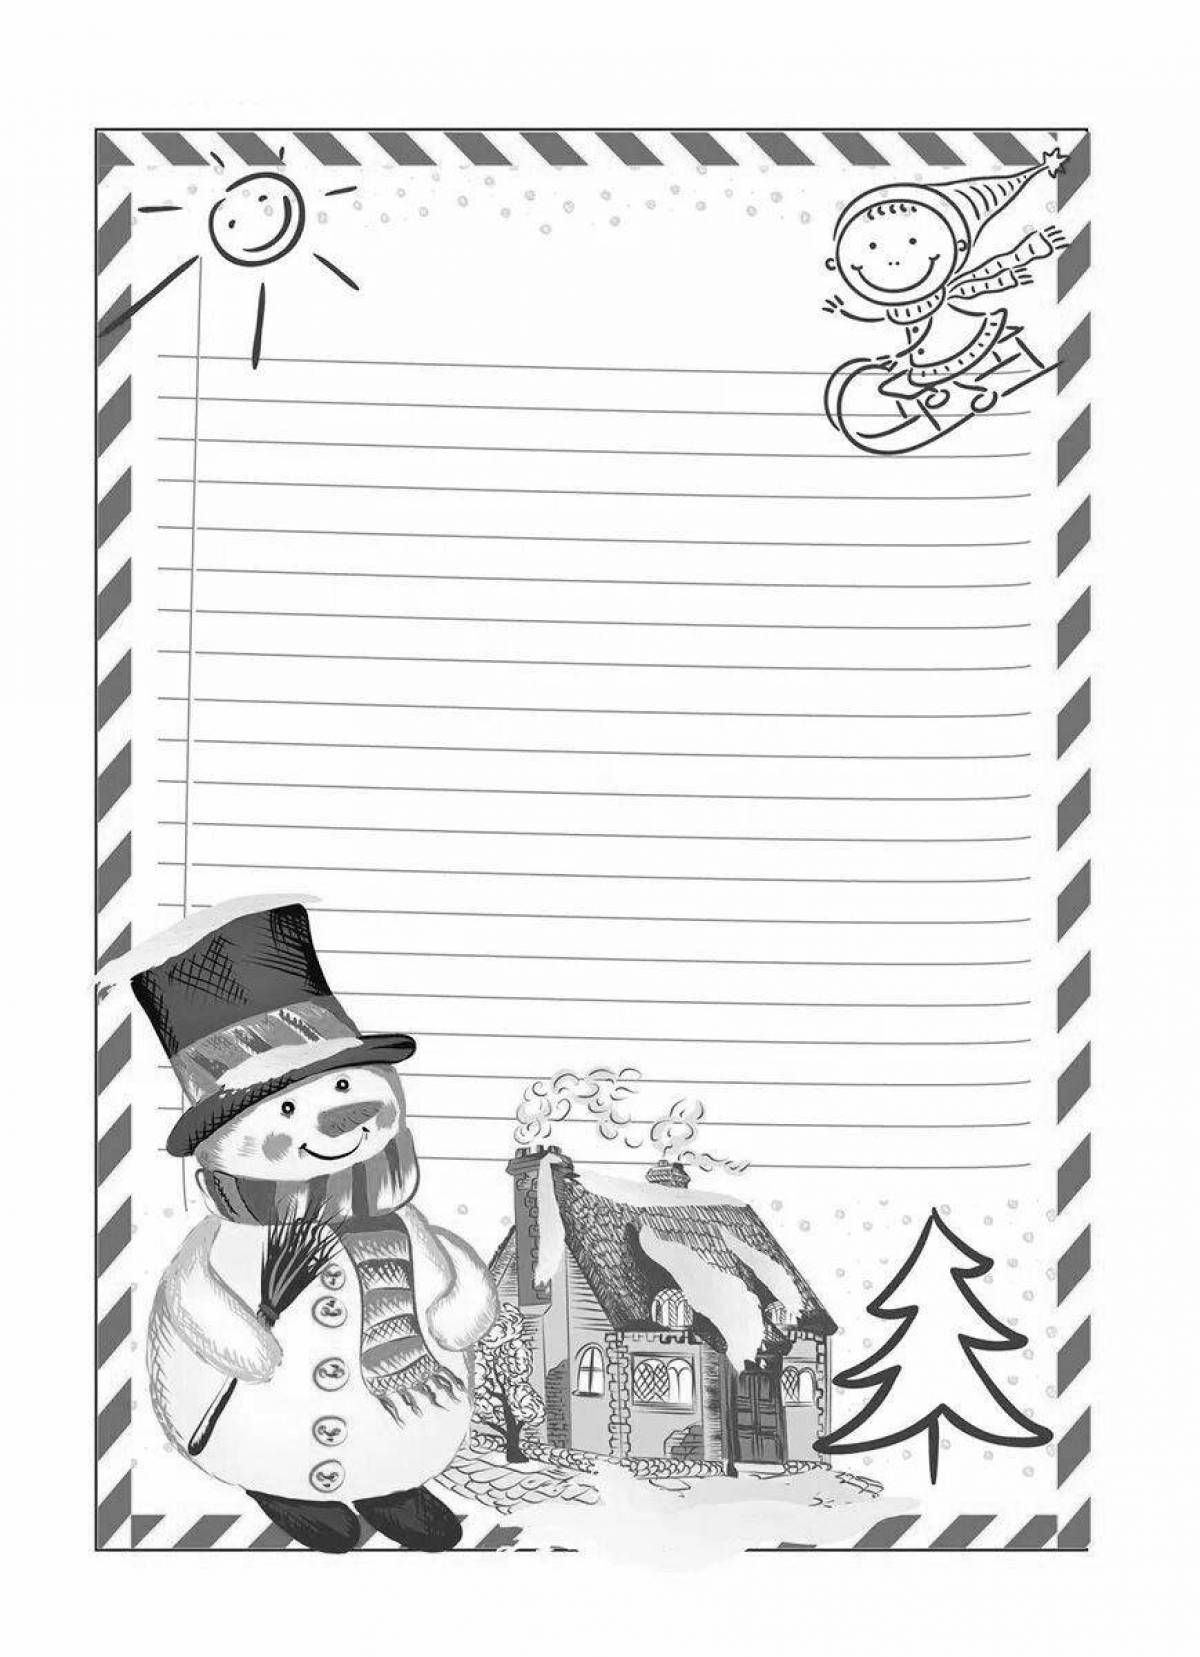 Gorgeous envelope for Santa's letter